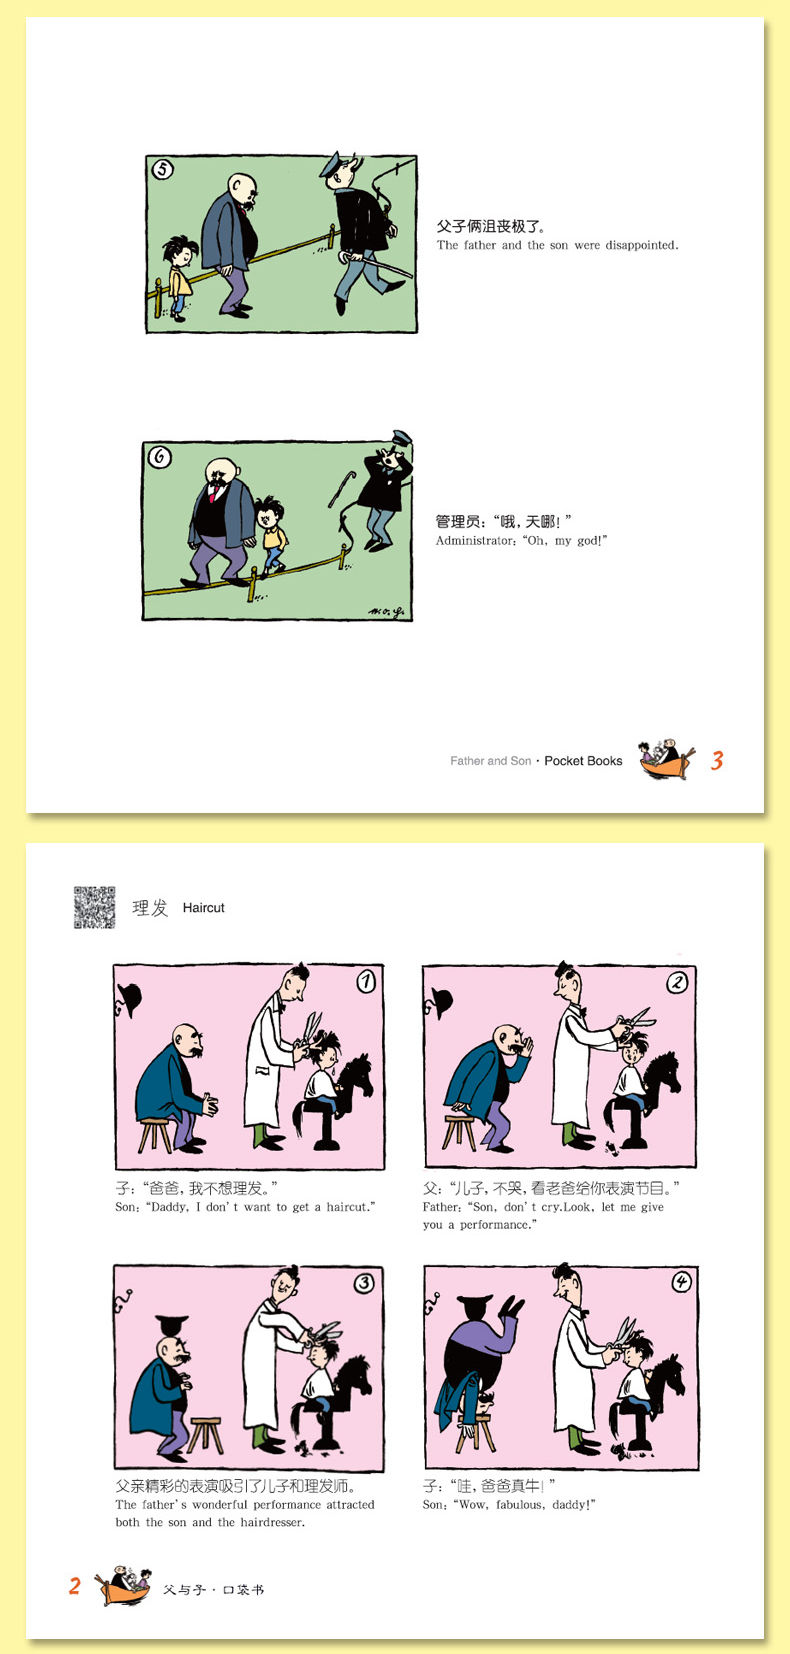 父与子全集 15册彩色英汉对照漫画卡通故事书 中英双语有声伴读详情图16